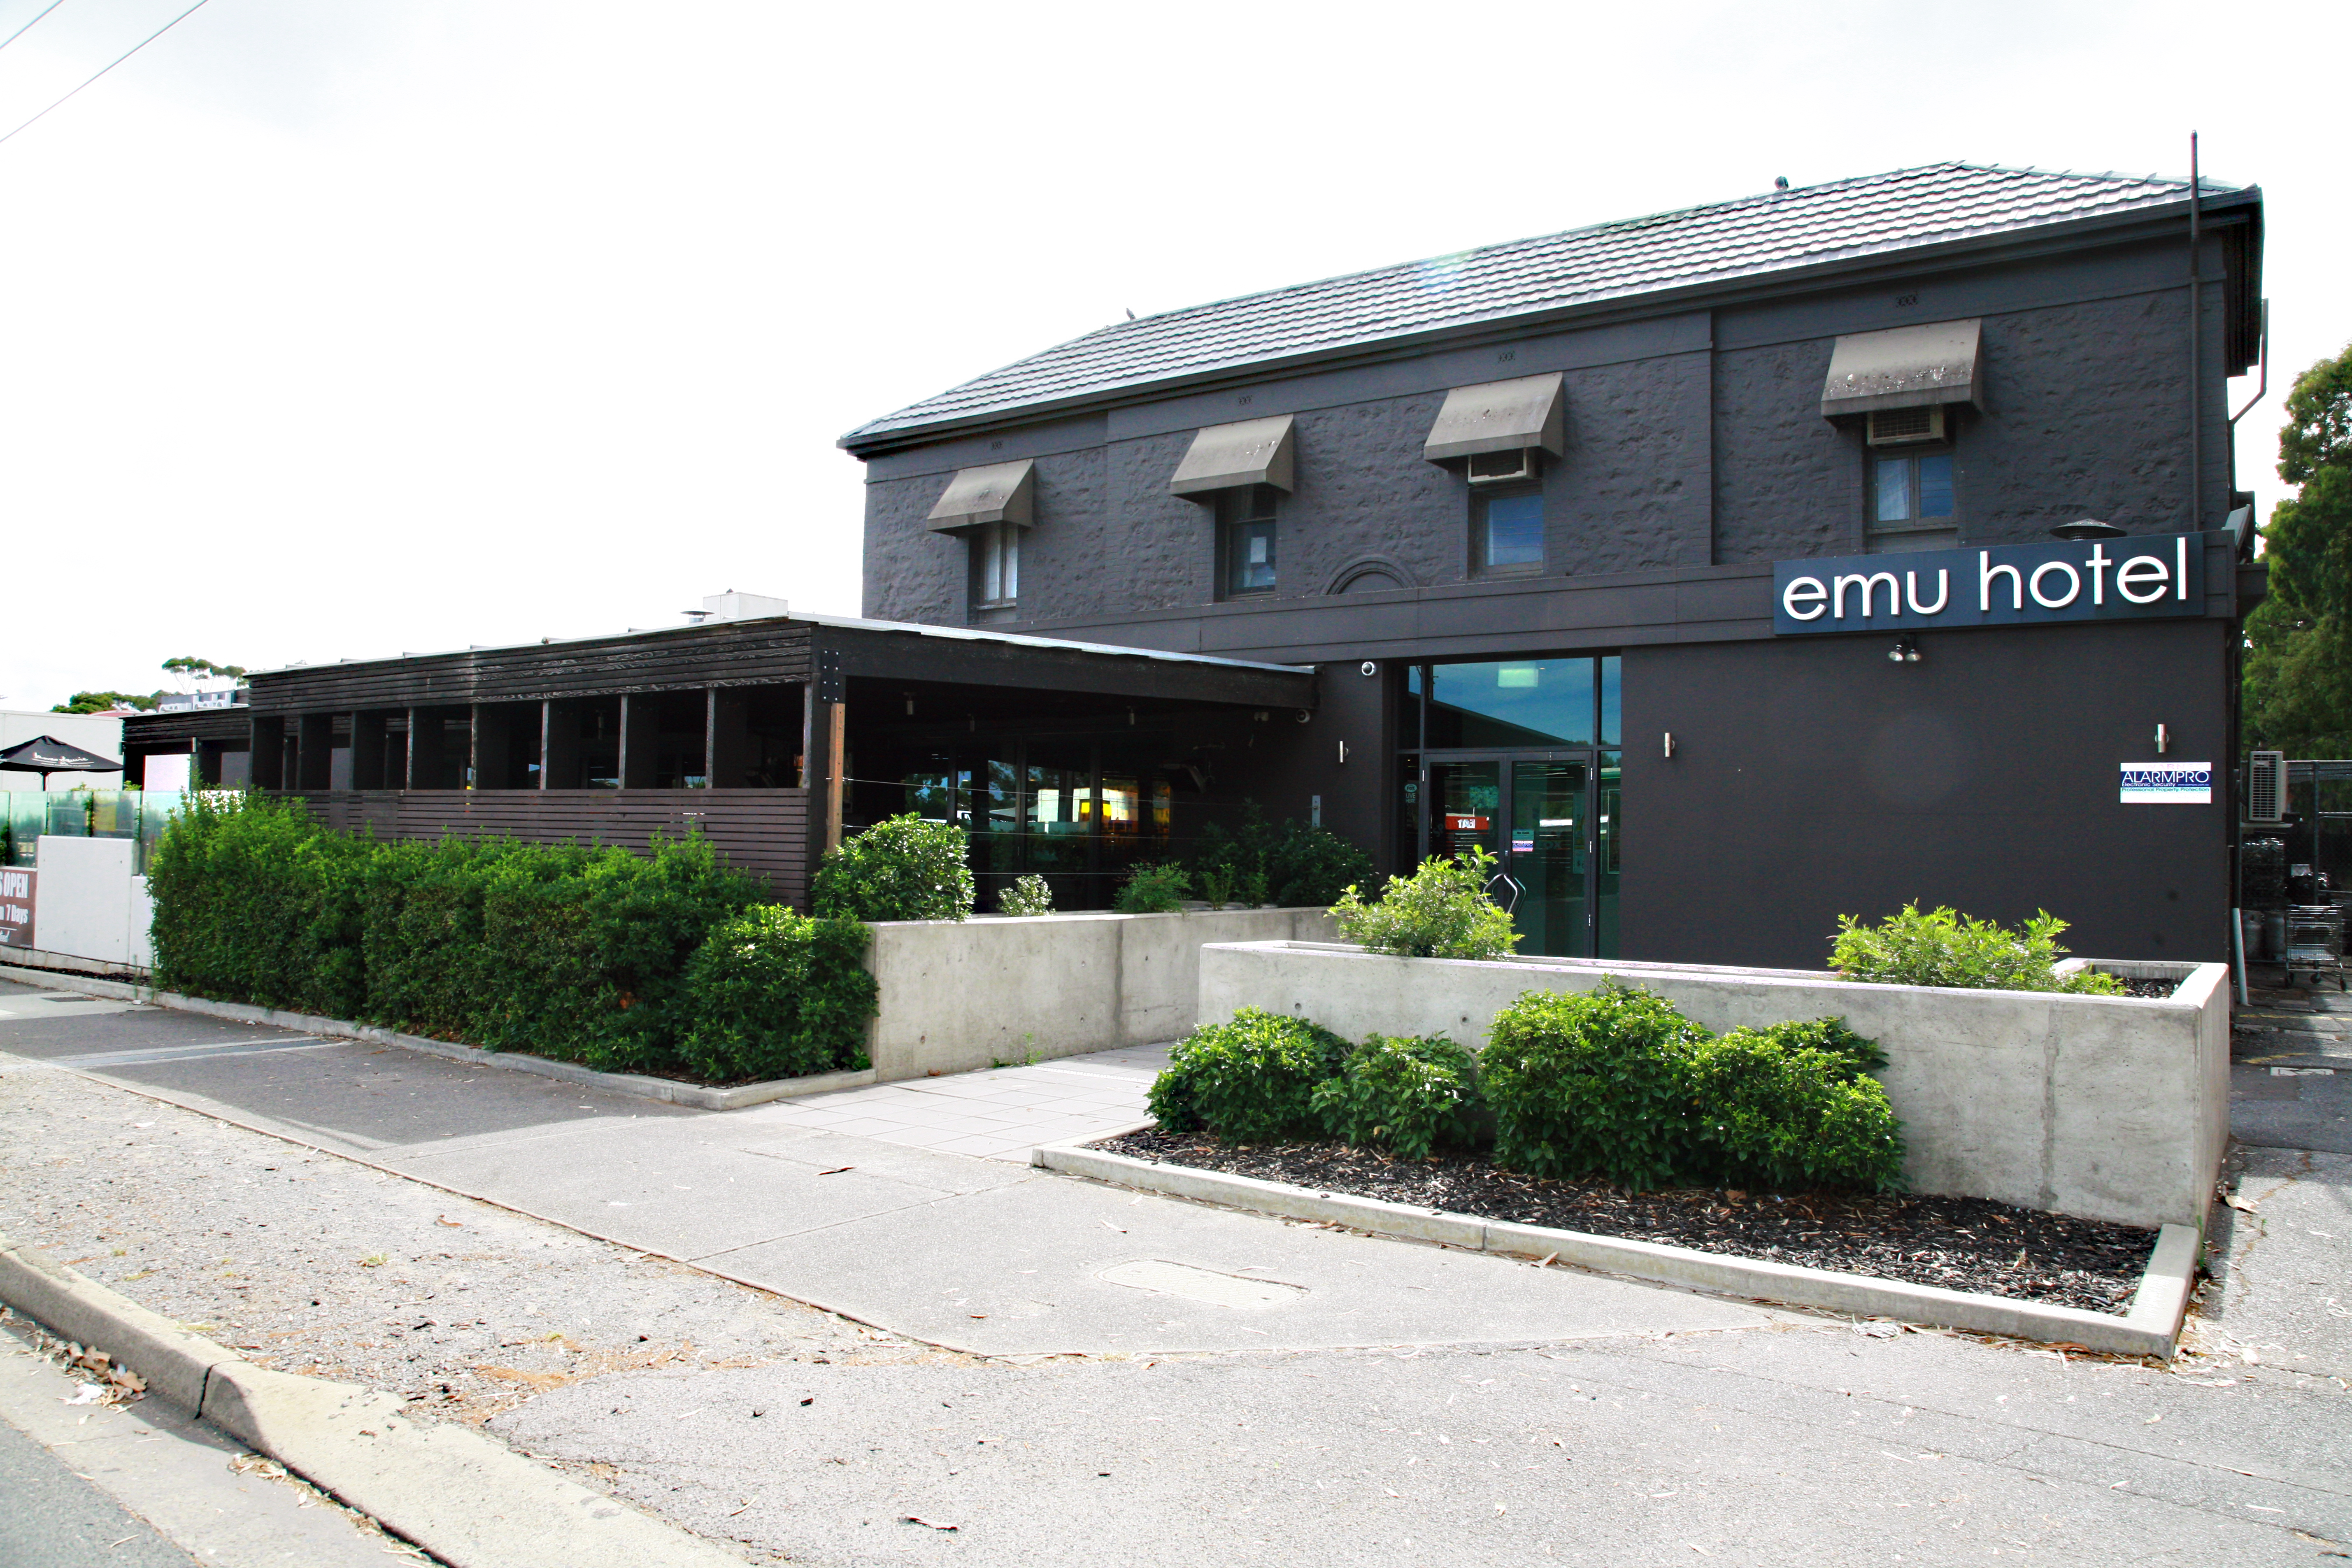 The Emu Hotel